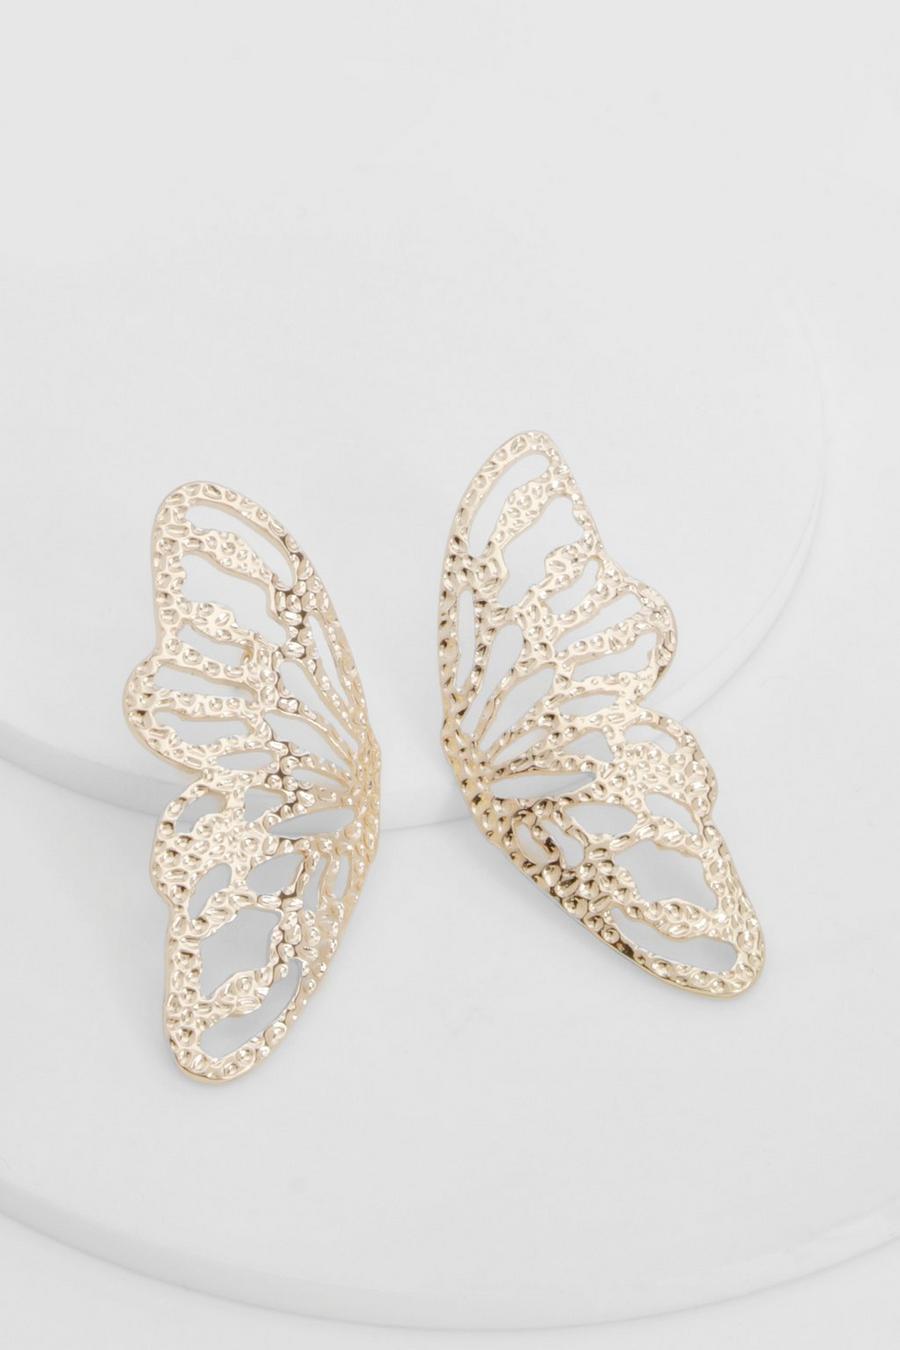 Gold Butterfly Statement Stud Earrings